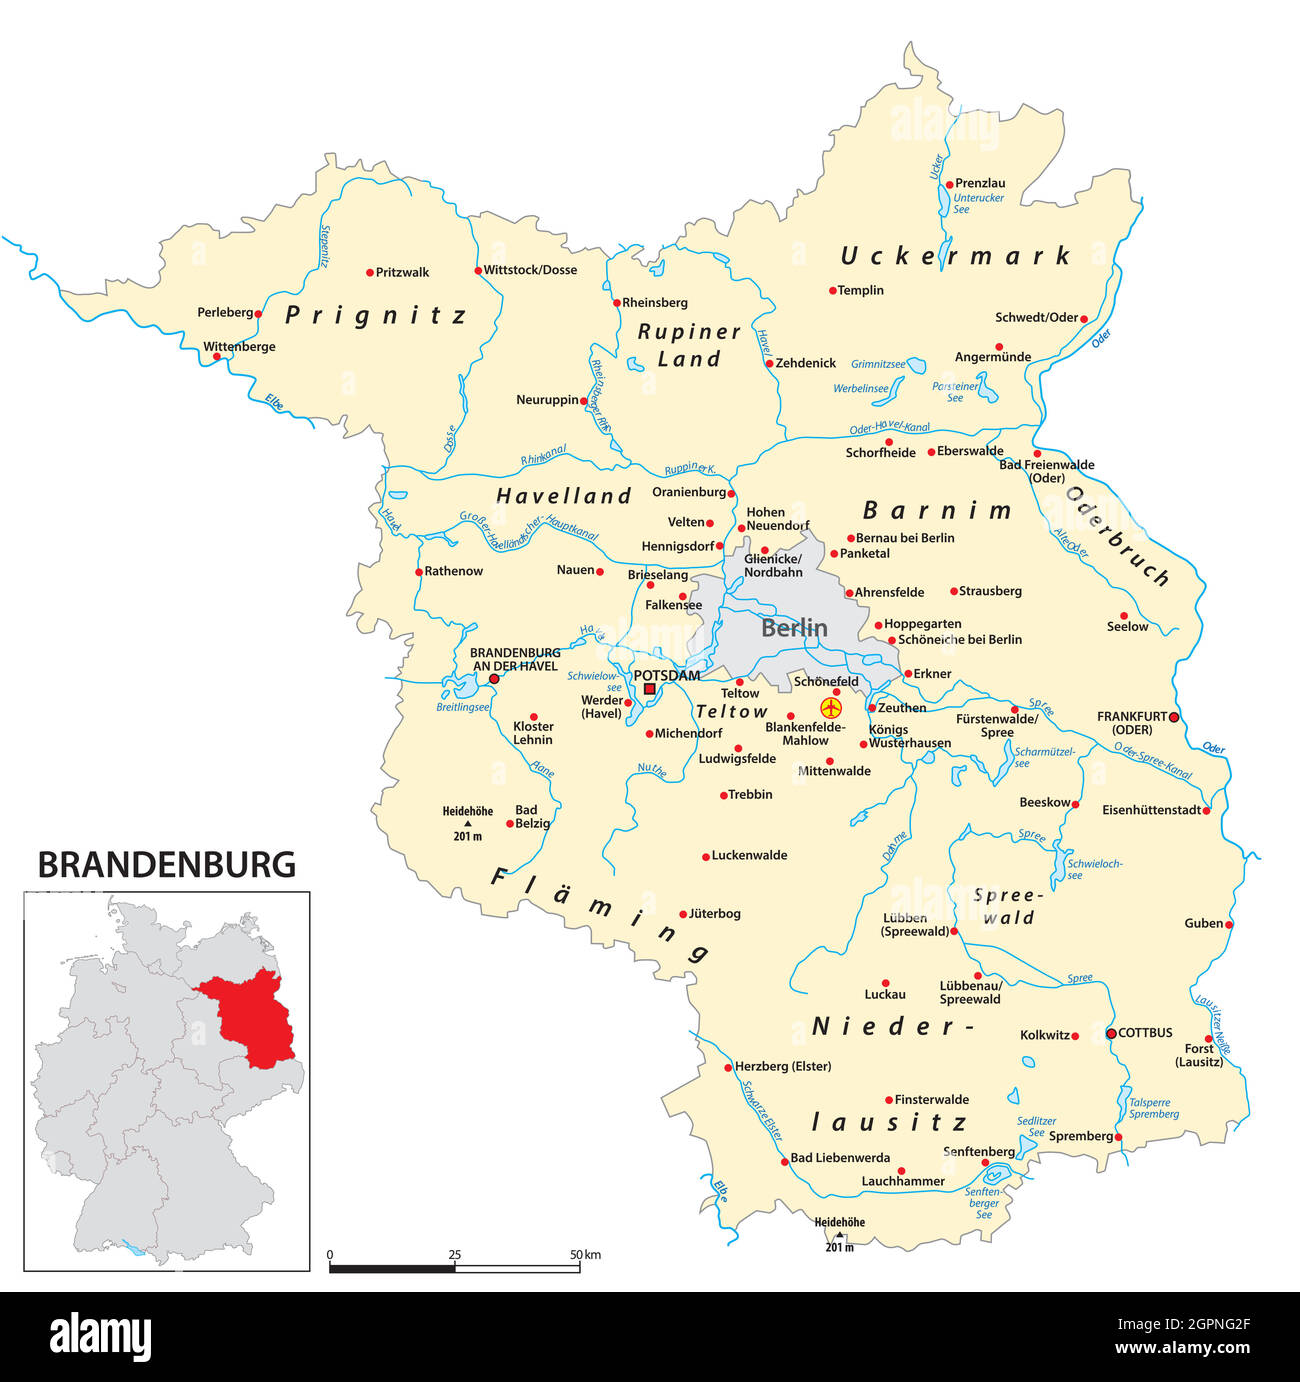 Karte des Landes Brandenburg in deutscher Sprache Stock-Vektorgrafik - Alamy